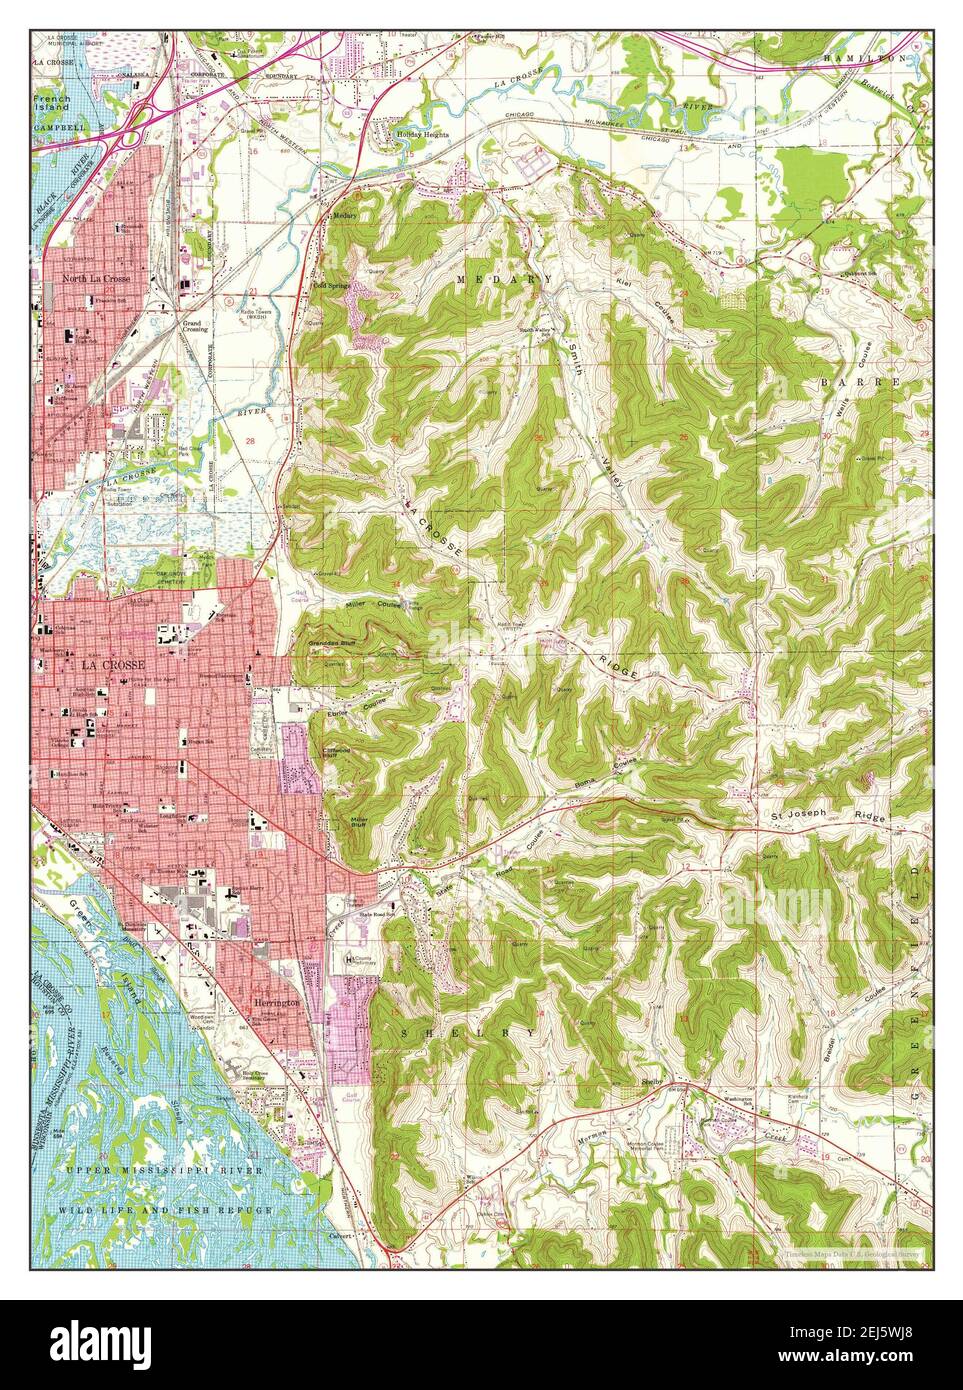 La Crosse, Wisconsin, Karte 1963, 1:24000, Vereinigte Staaten von Amerika von Timeless Maps, Daten U.S. Geological Survey Stockfoto